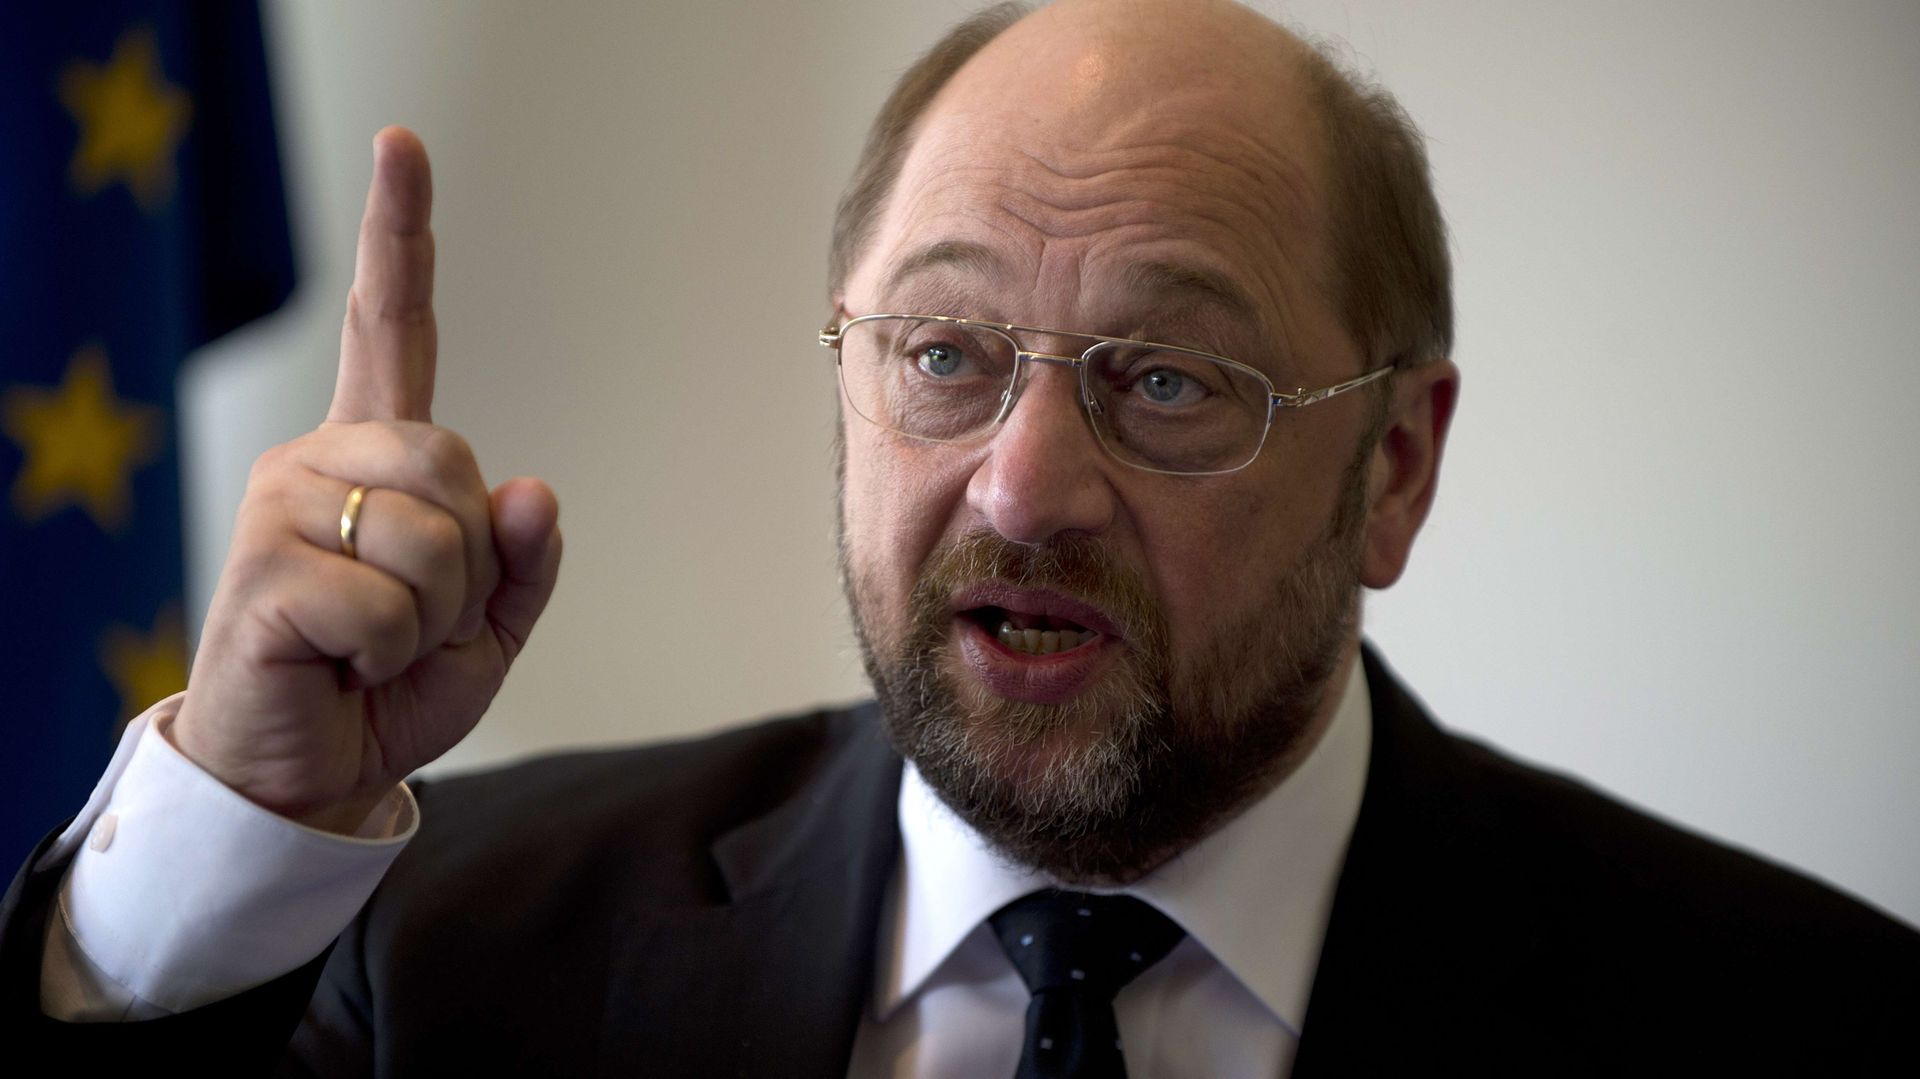 Martin Schulz: "La concurrence fiscale dans l'UE n'est plus tenable" 